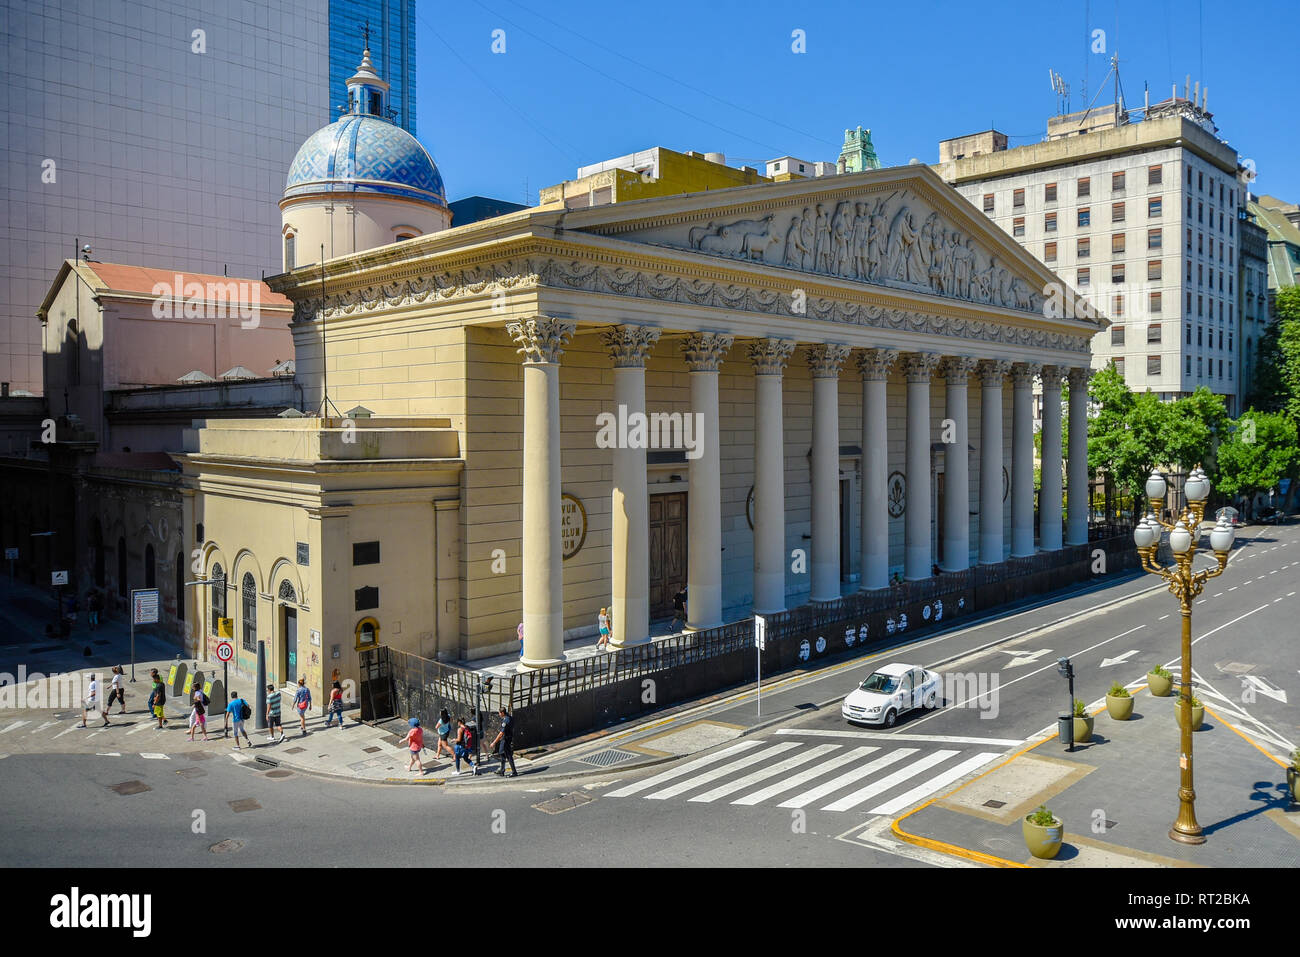 Buenos Aires, Argentinien - Dez 4, 2016: Buenos Aires Metropolitan Cathedral ist die grösste katholische Kirche in Capital Federal. Stockfoto